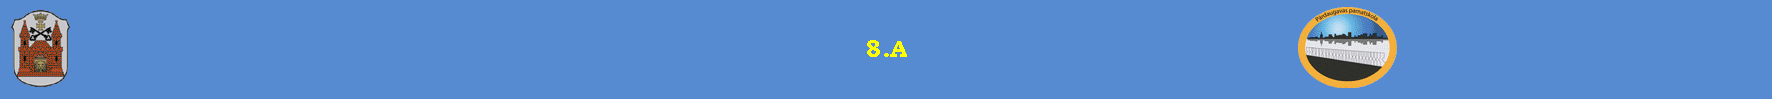 8.A